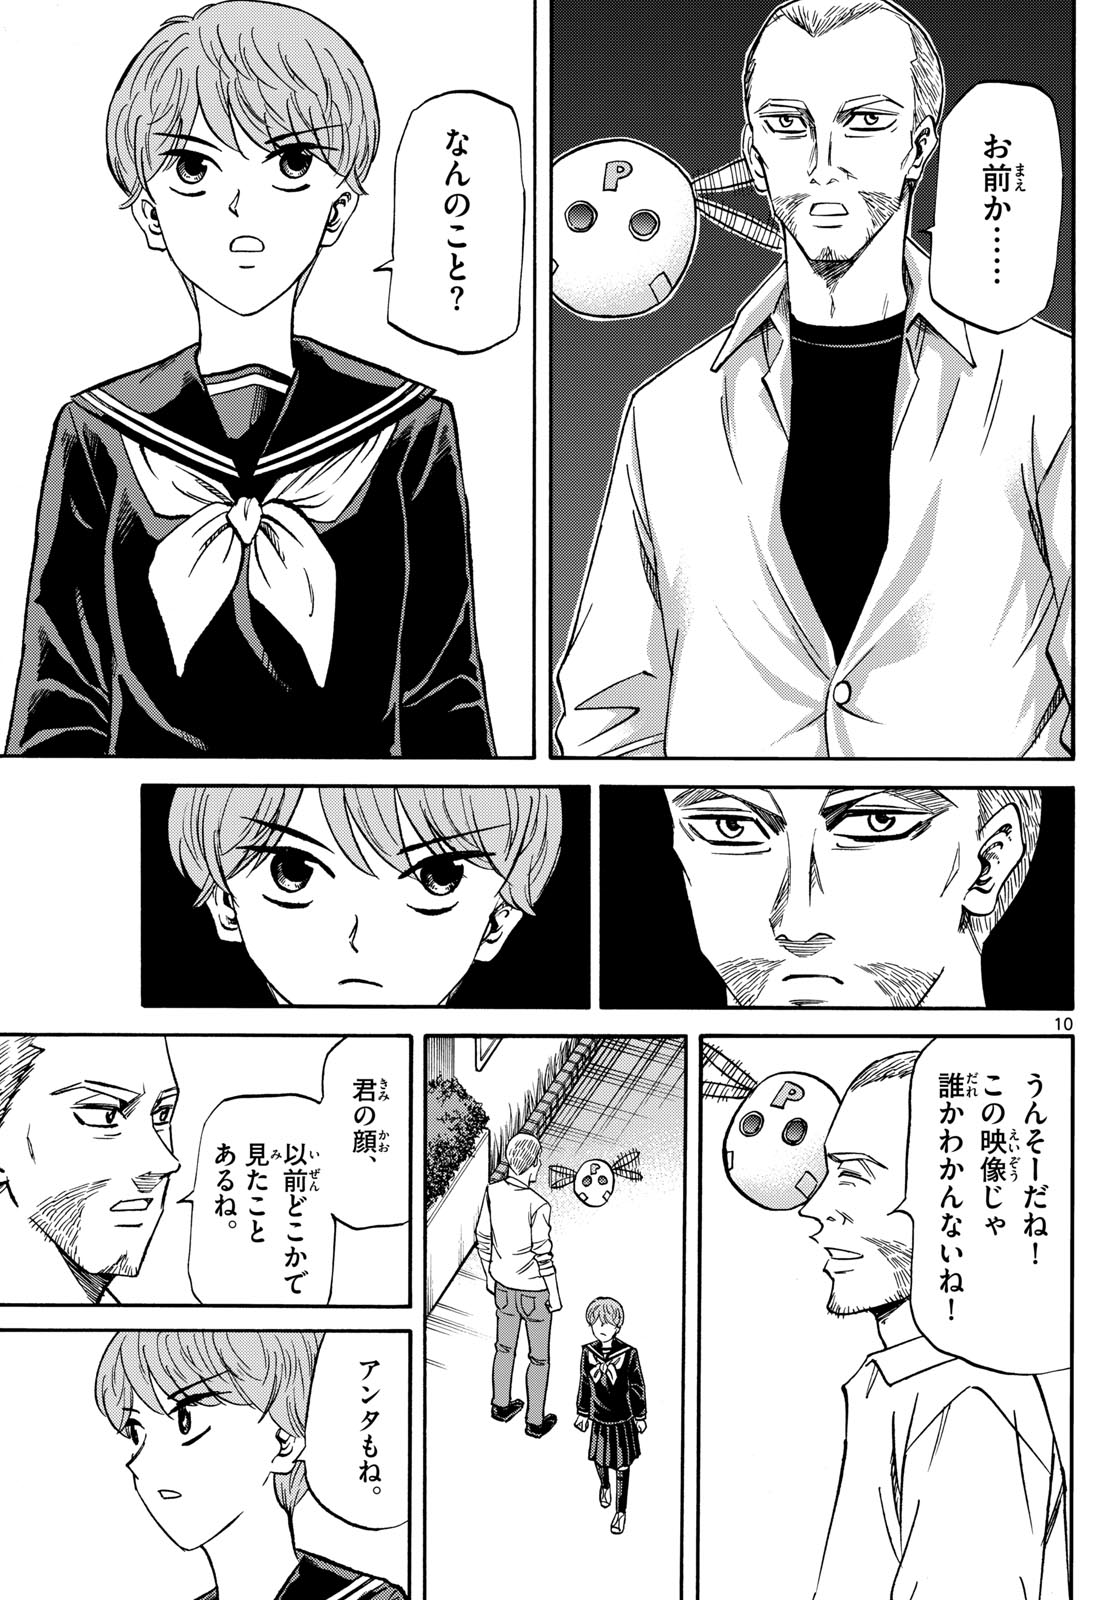 Tatsu to Ichigo - Chapter 182 - Page 10